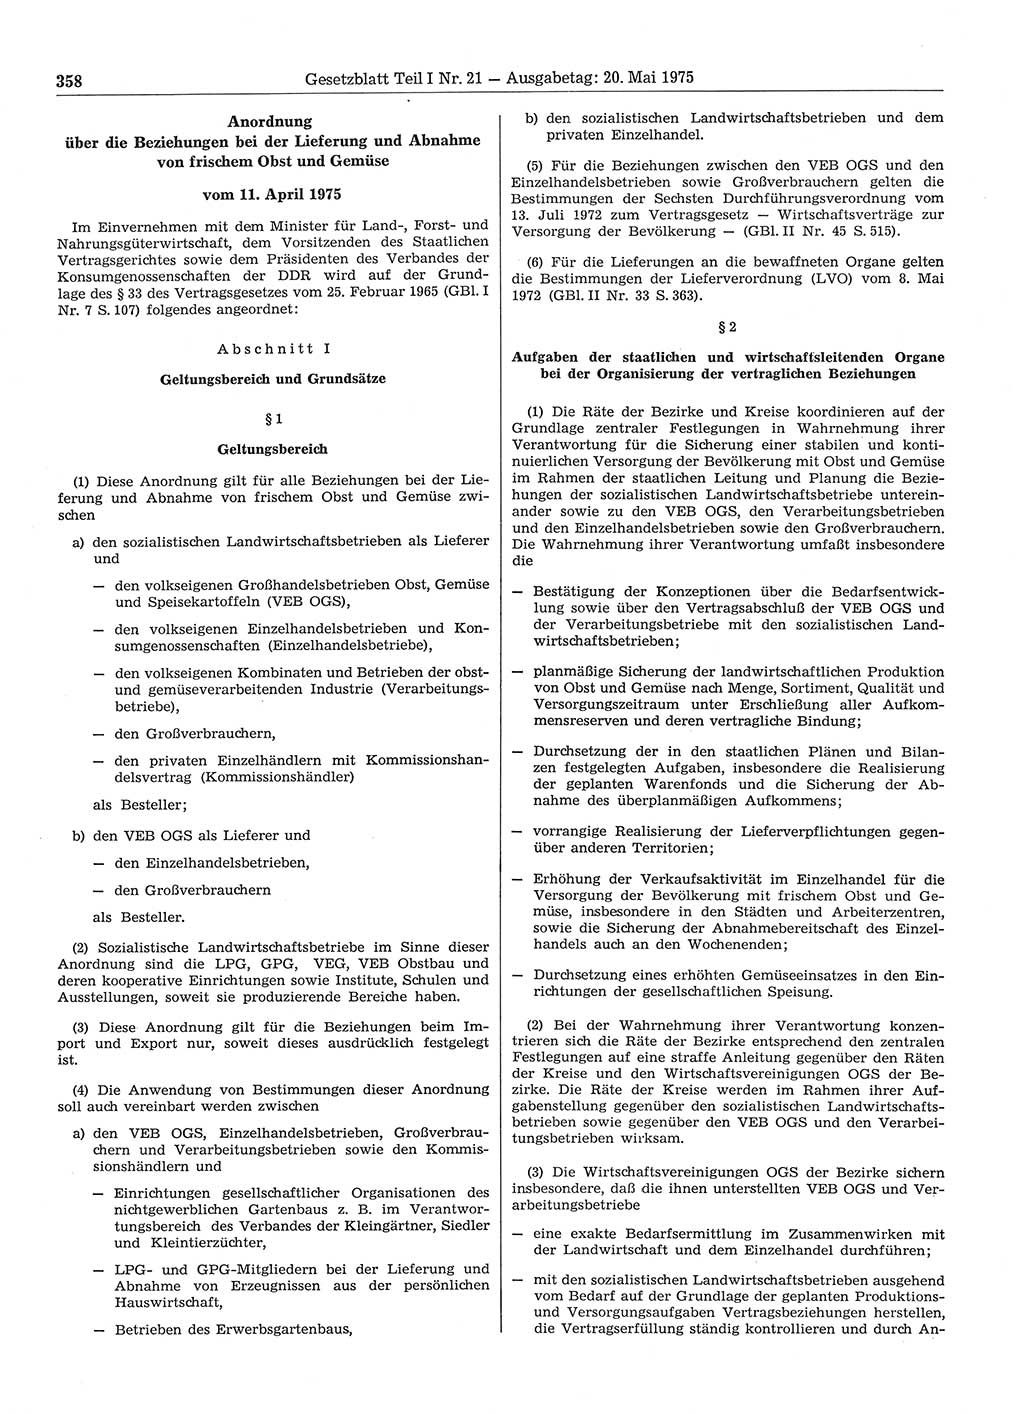 Gesetzblatt (GBl.) der Deutschen Demokratischen Republik (DDR) Teil Ⅰ 1975, Seite 358 (GBl. DDR Ⅰ 1975, S. 358)